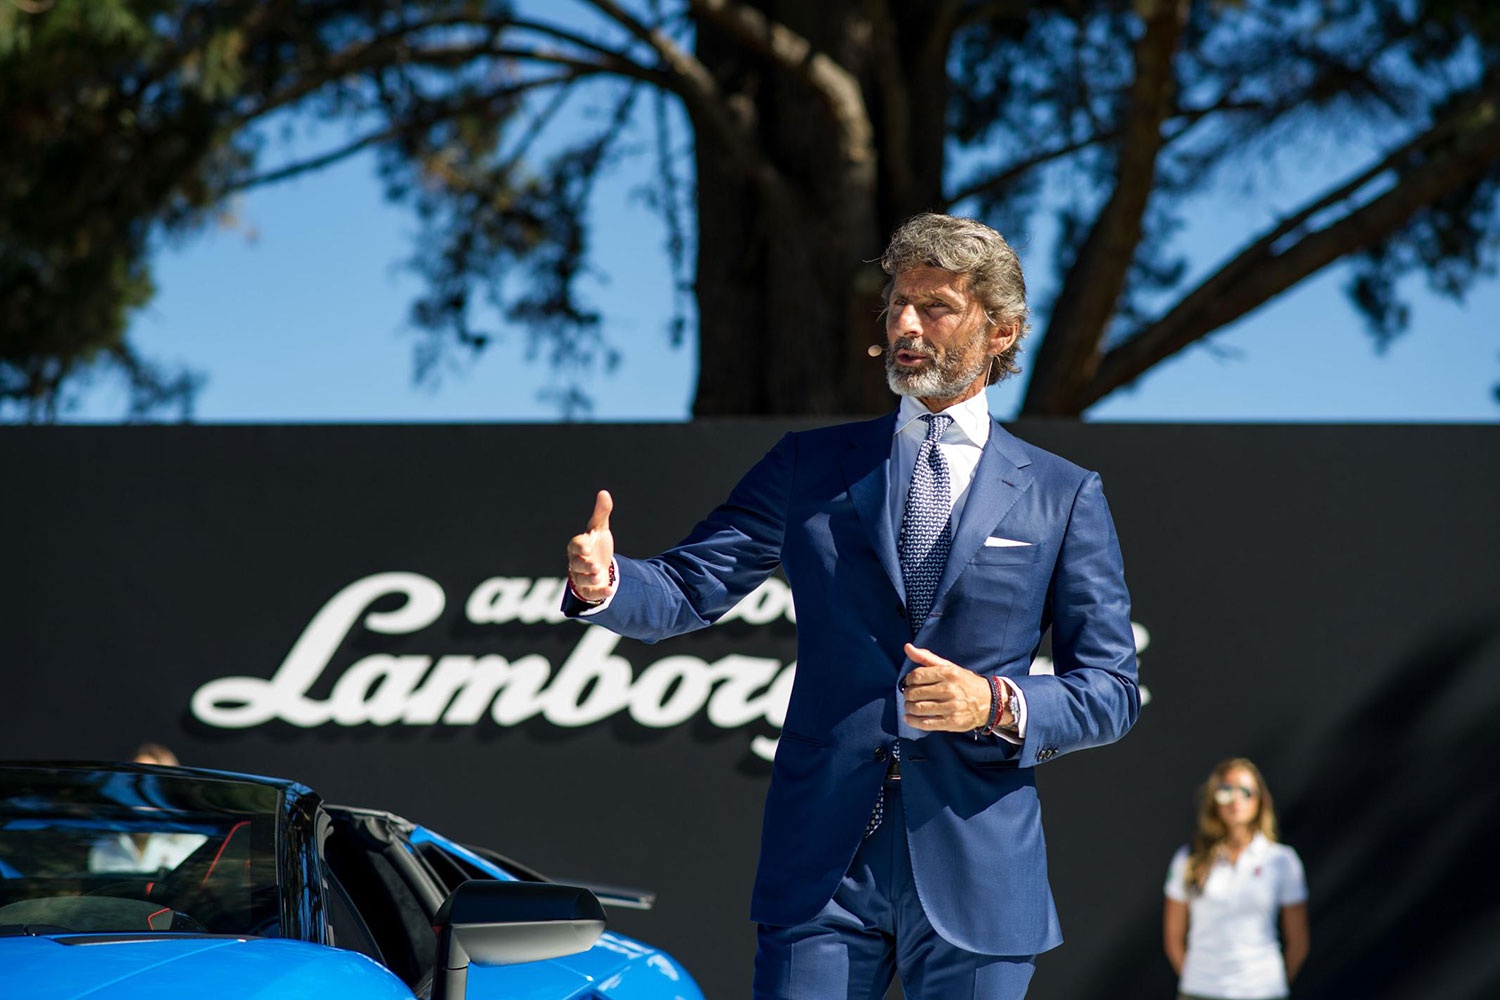 CEO Lamborghini больше похож на модель мужских журналов, чем на управленца. Во многом это заслуга его портного